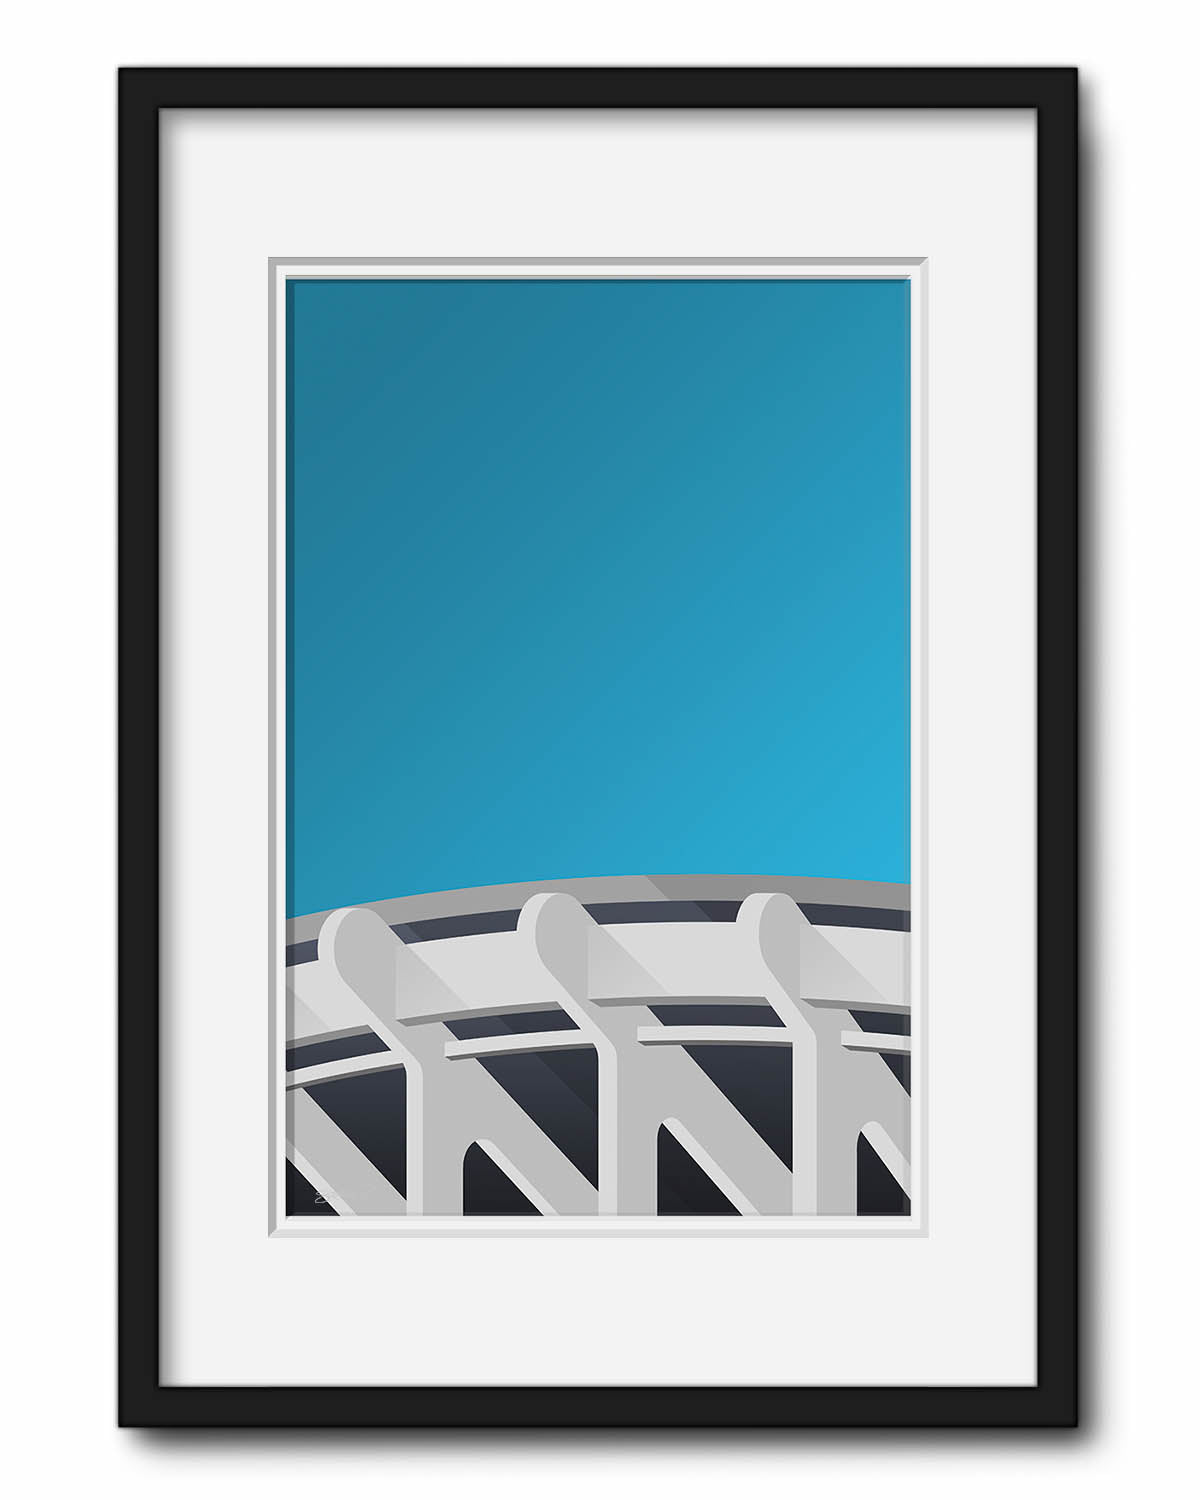 Minimalist RFK Stadium